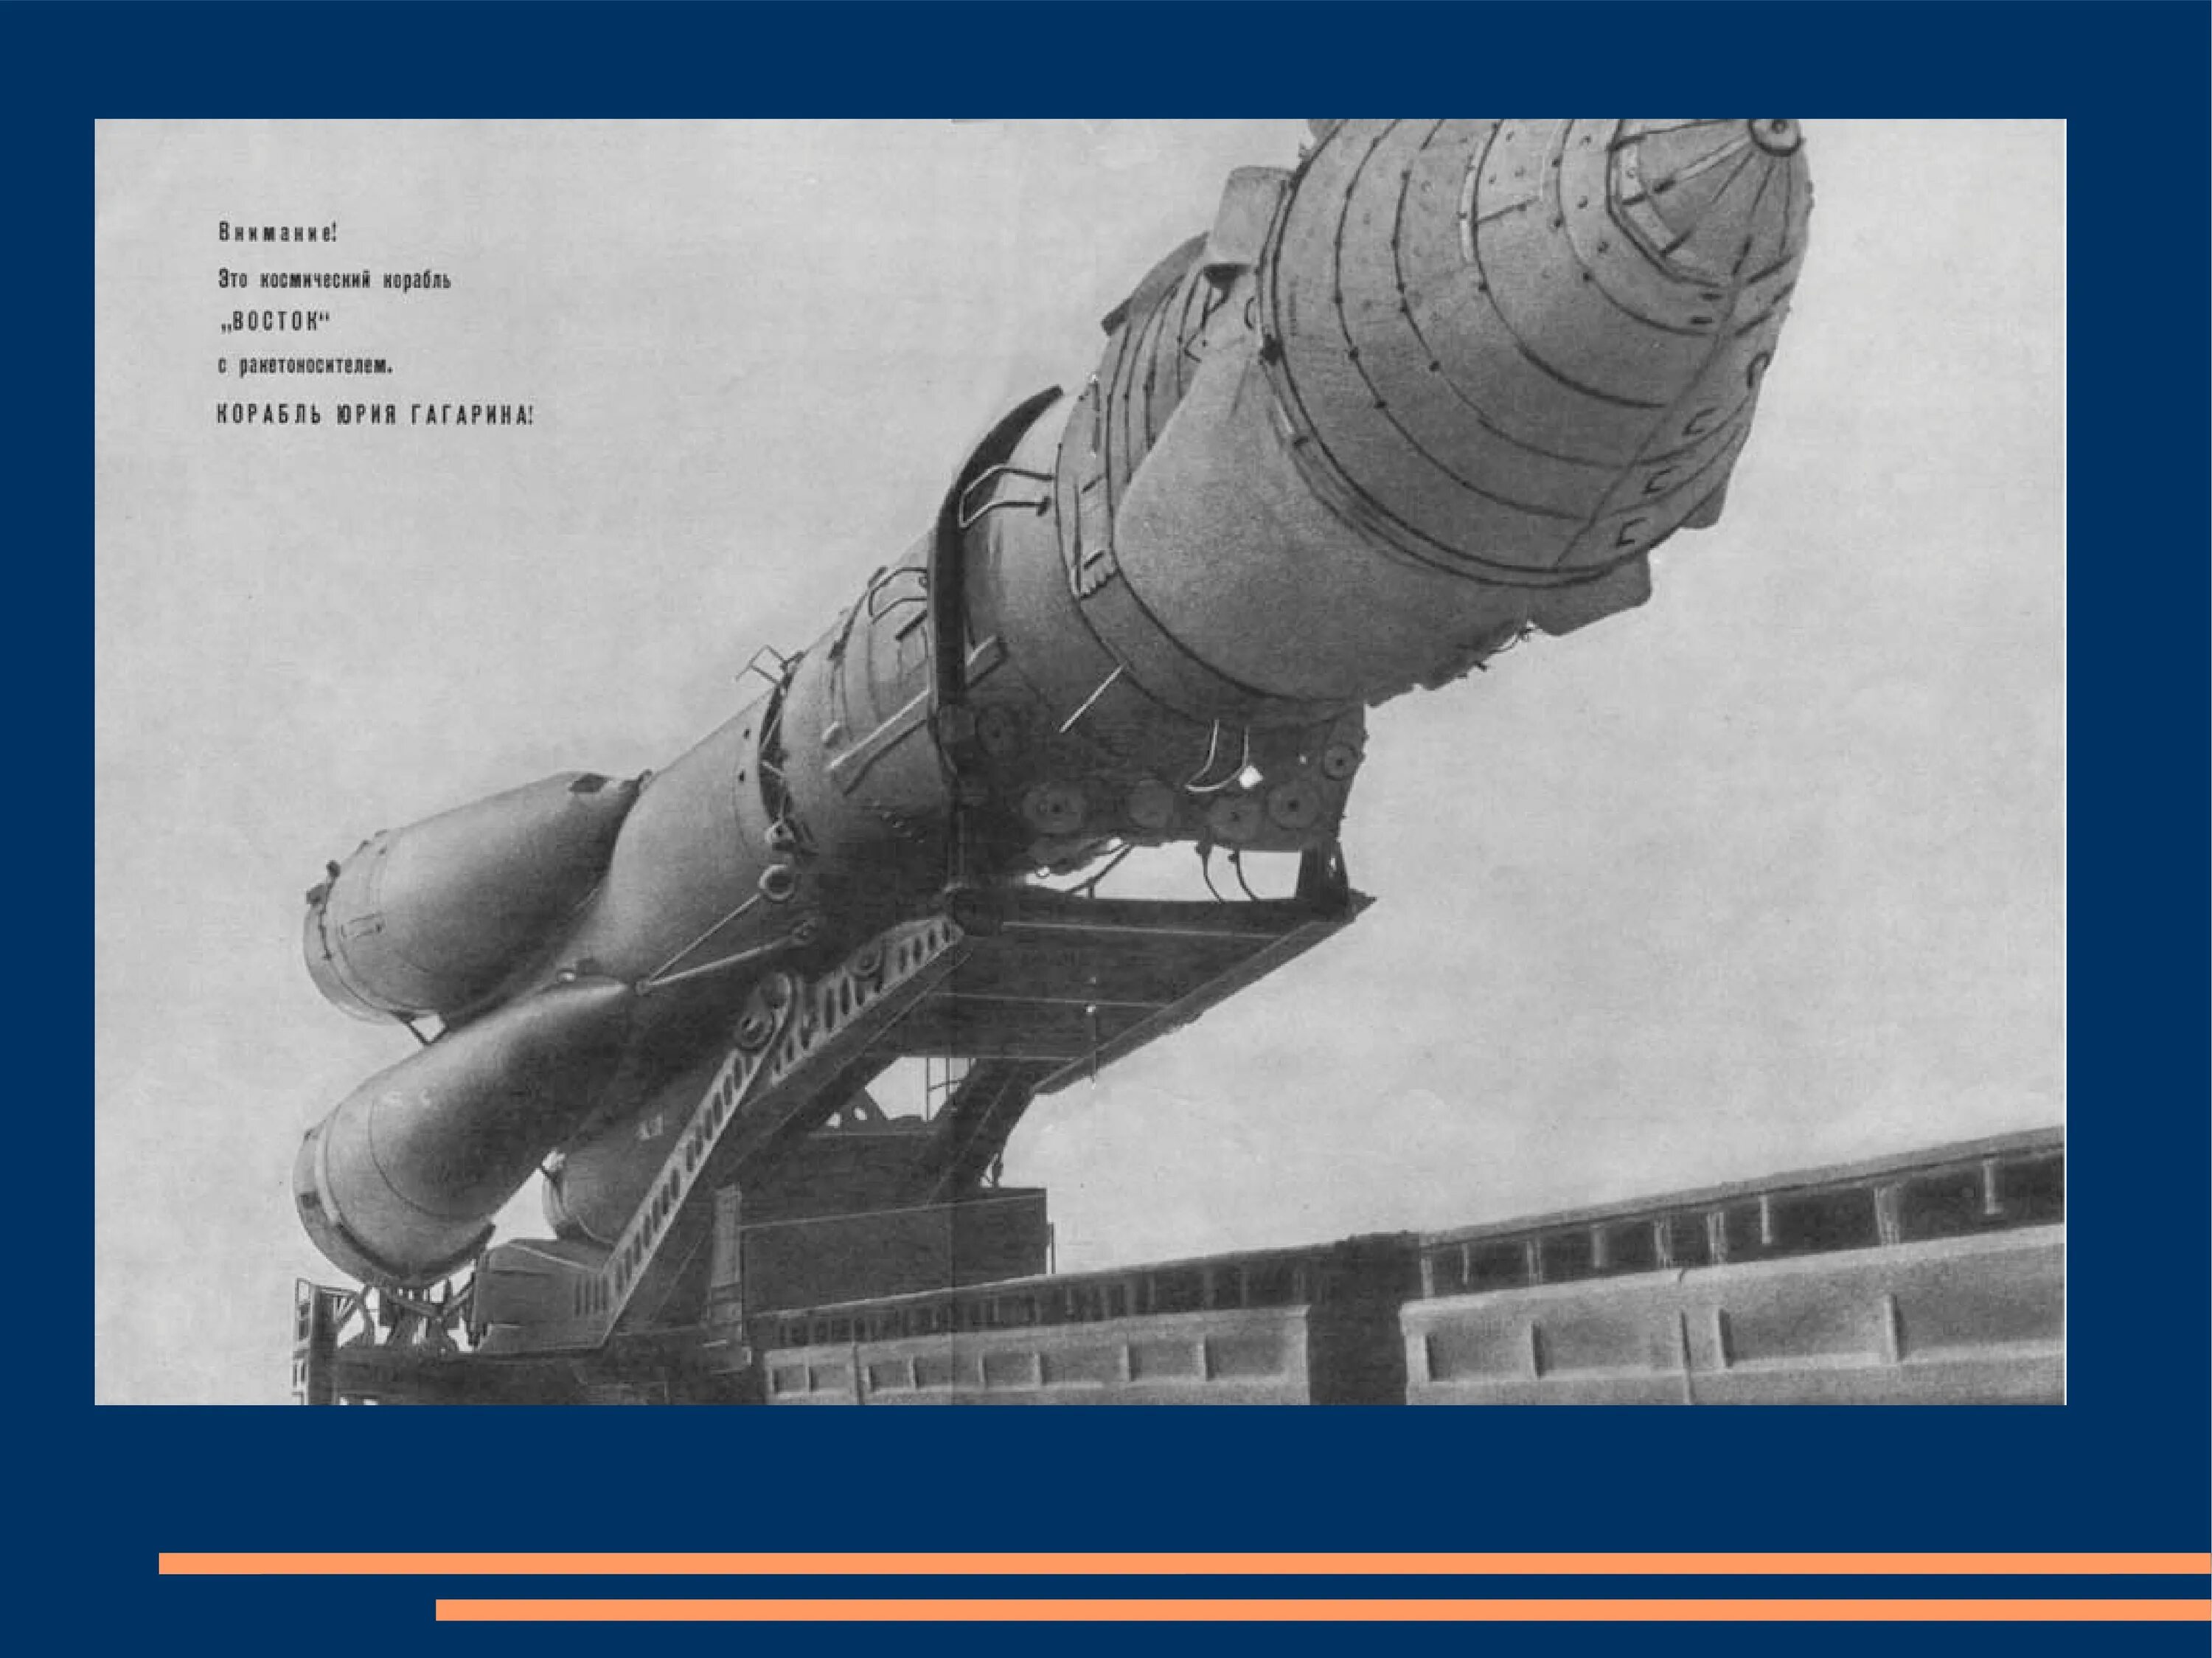 Космический корабль Восток Юрия Гагарина. Корабль Восток 1 Гагарин. Ракета Юрия Гагарина Восток-1. Космический корабль Восток Юрия Гагарина фото.